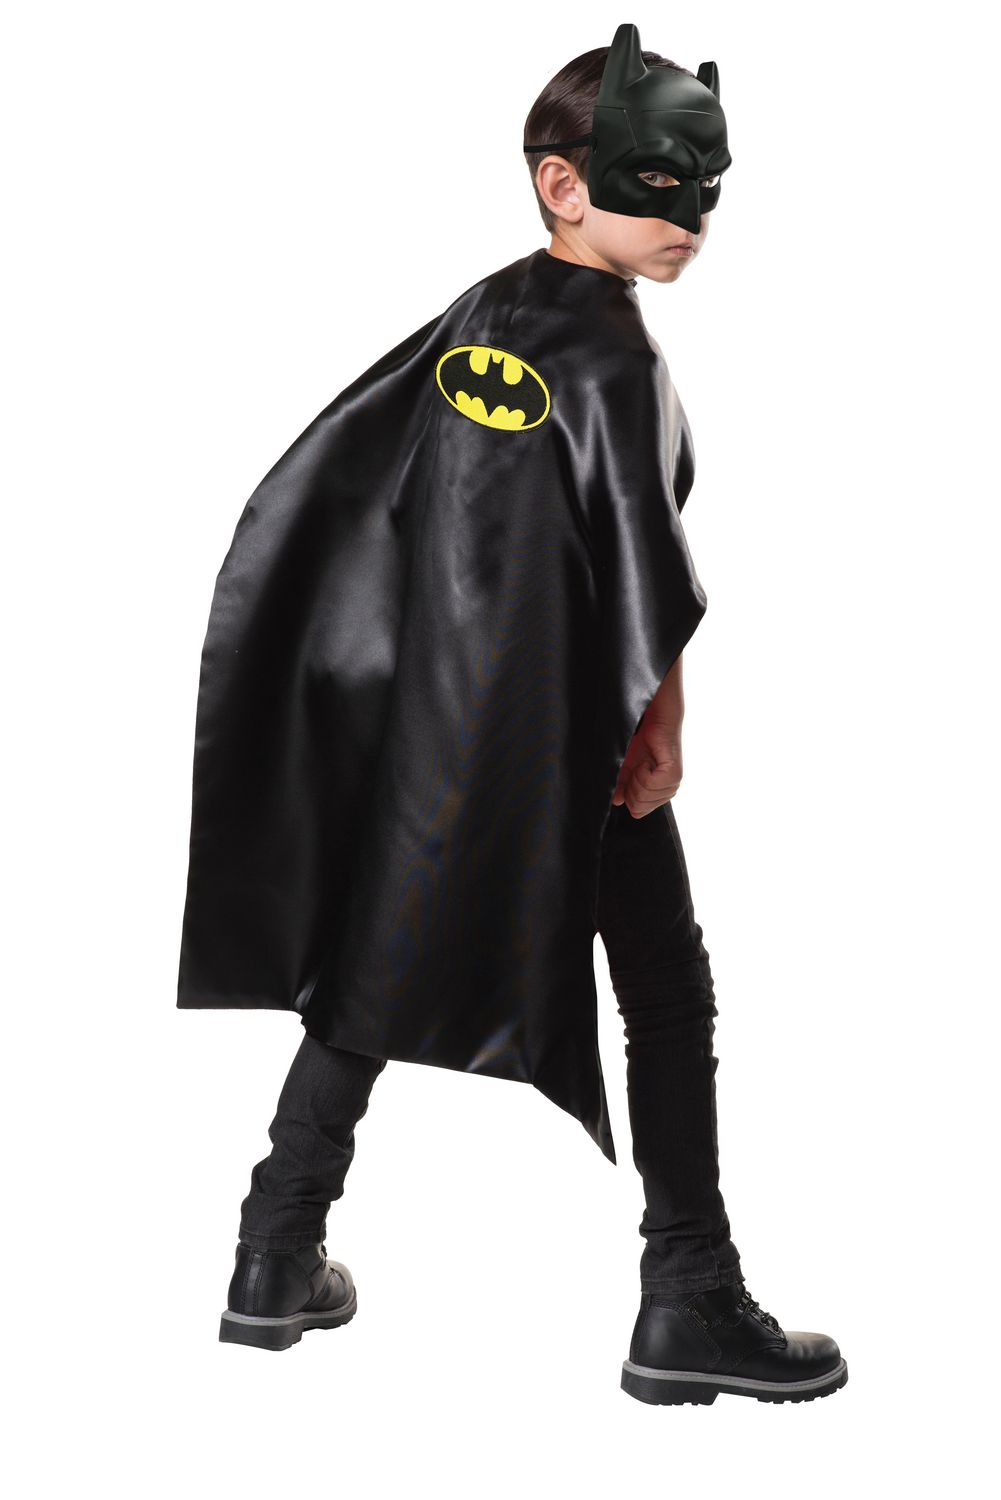 Карнавальный костюм Бэтмен. Костюм Бэтмена для фотошопа. Batman маска плащ. Бэтмен без маски. Batman cape